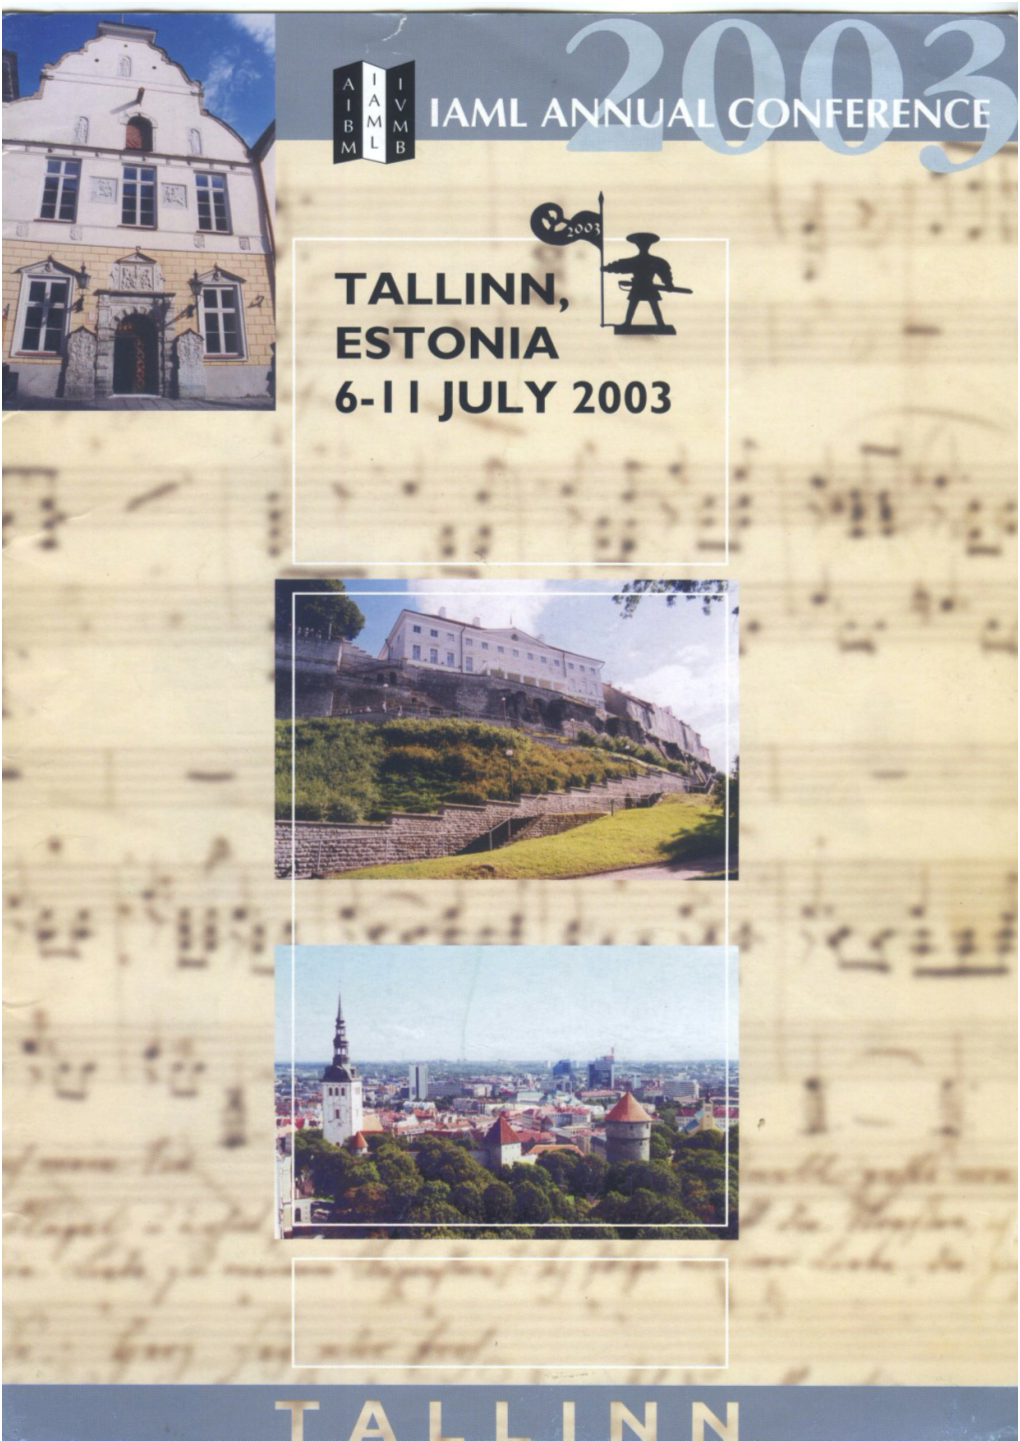 Tallinn, Estonia 6-1 I July 2003